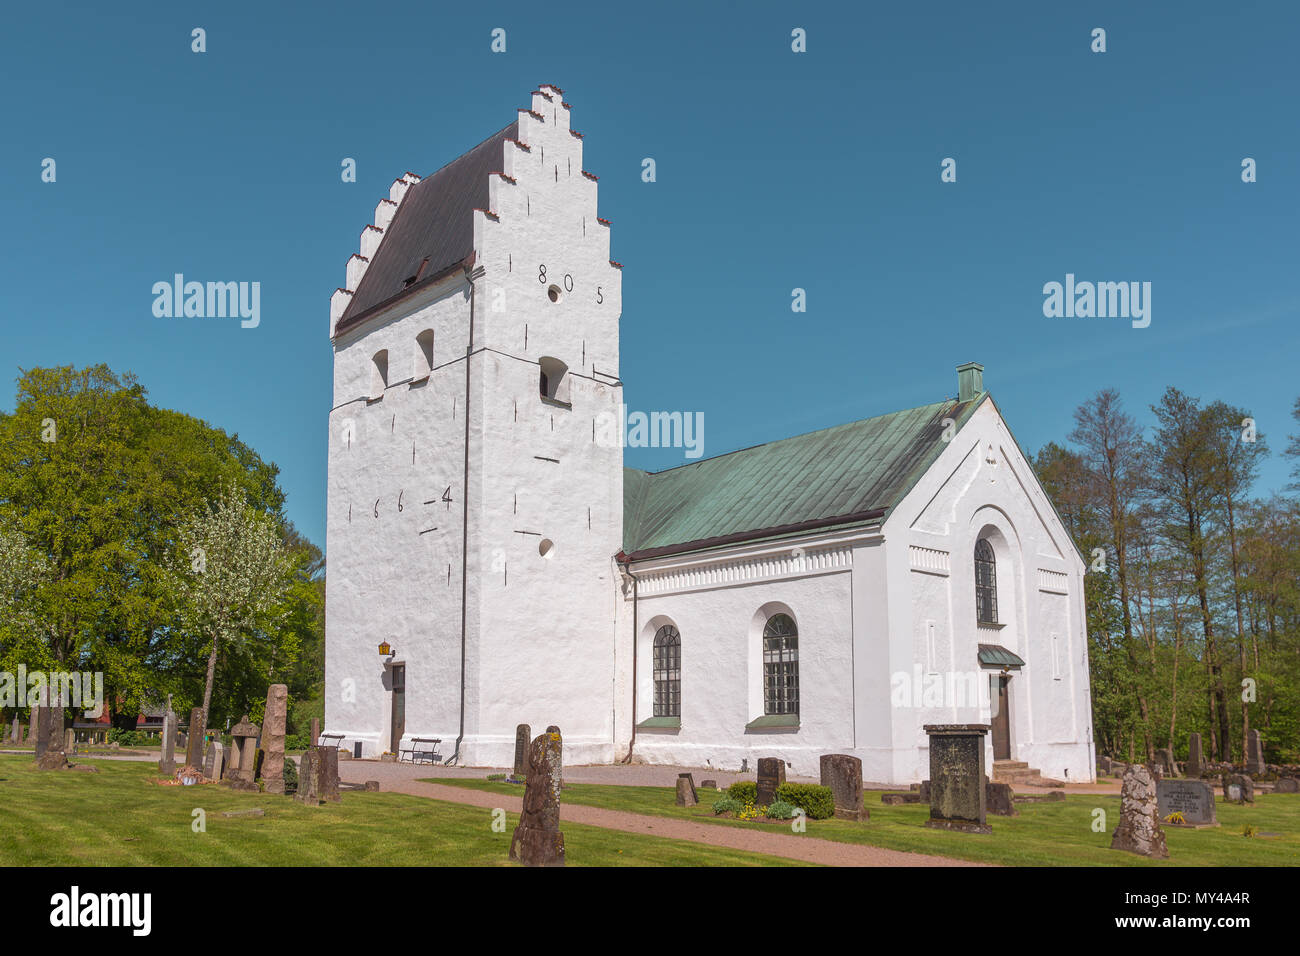 Un bianco scandinavo chiesa medievale con timpani a gradini e lapidi nel prato verde, Finja, Svezia, 9 maggio 2018 Foto Stock